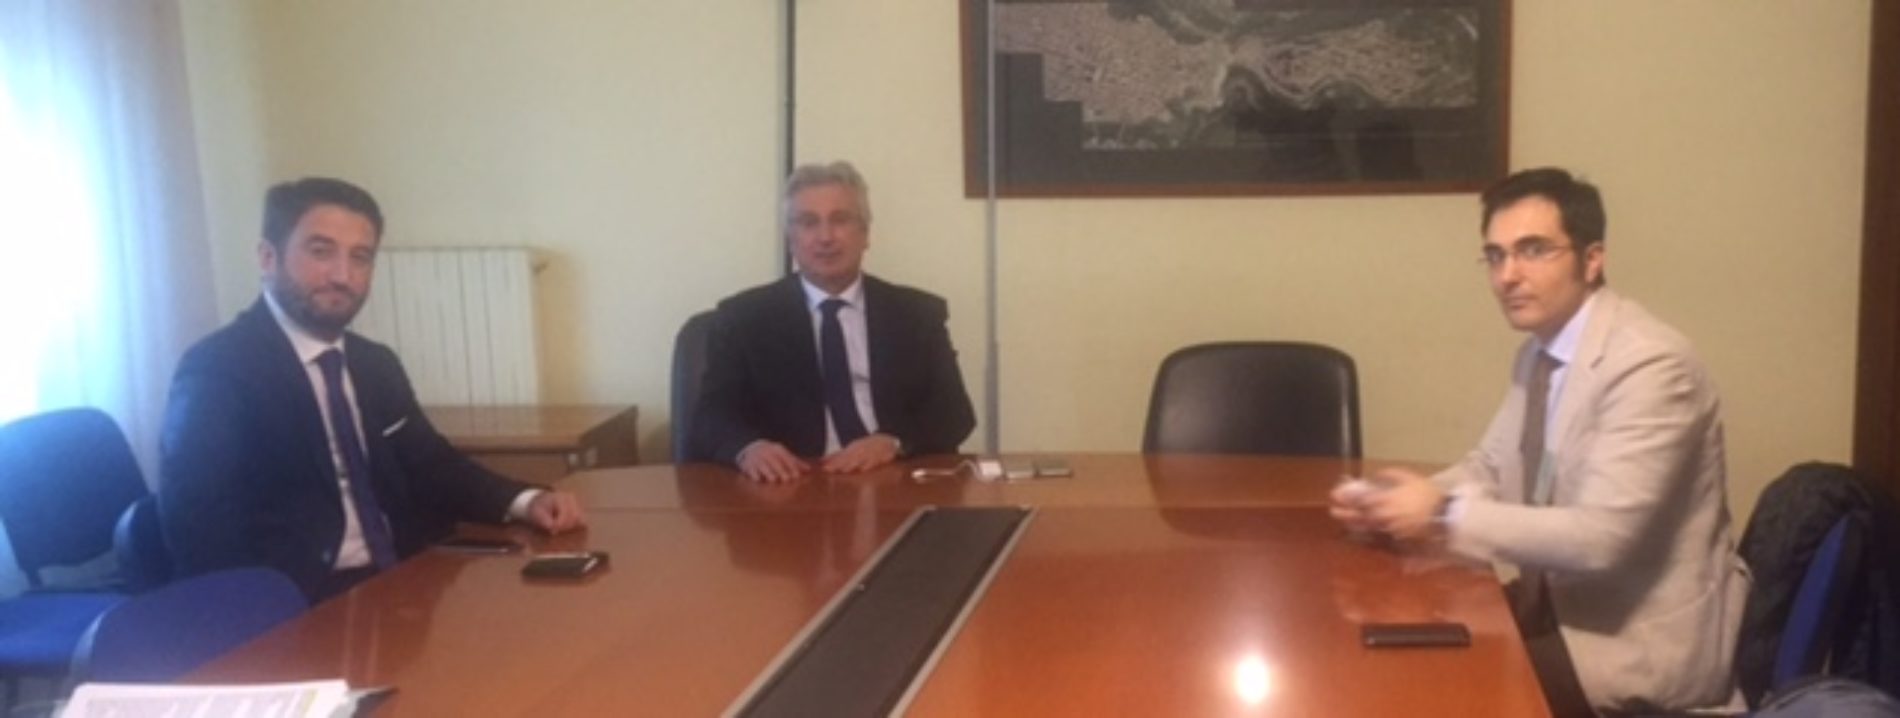 Questione RSA di Piertraperzia. Il sindaco Antonio Bevilacqua e l’on. Giancarlo Cancellieri incontrano l’assessore regionale alla Salute Baldo Guicciardi